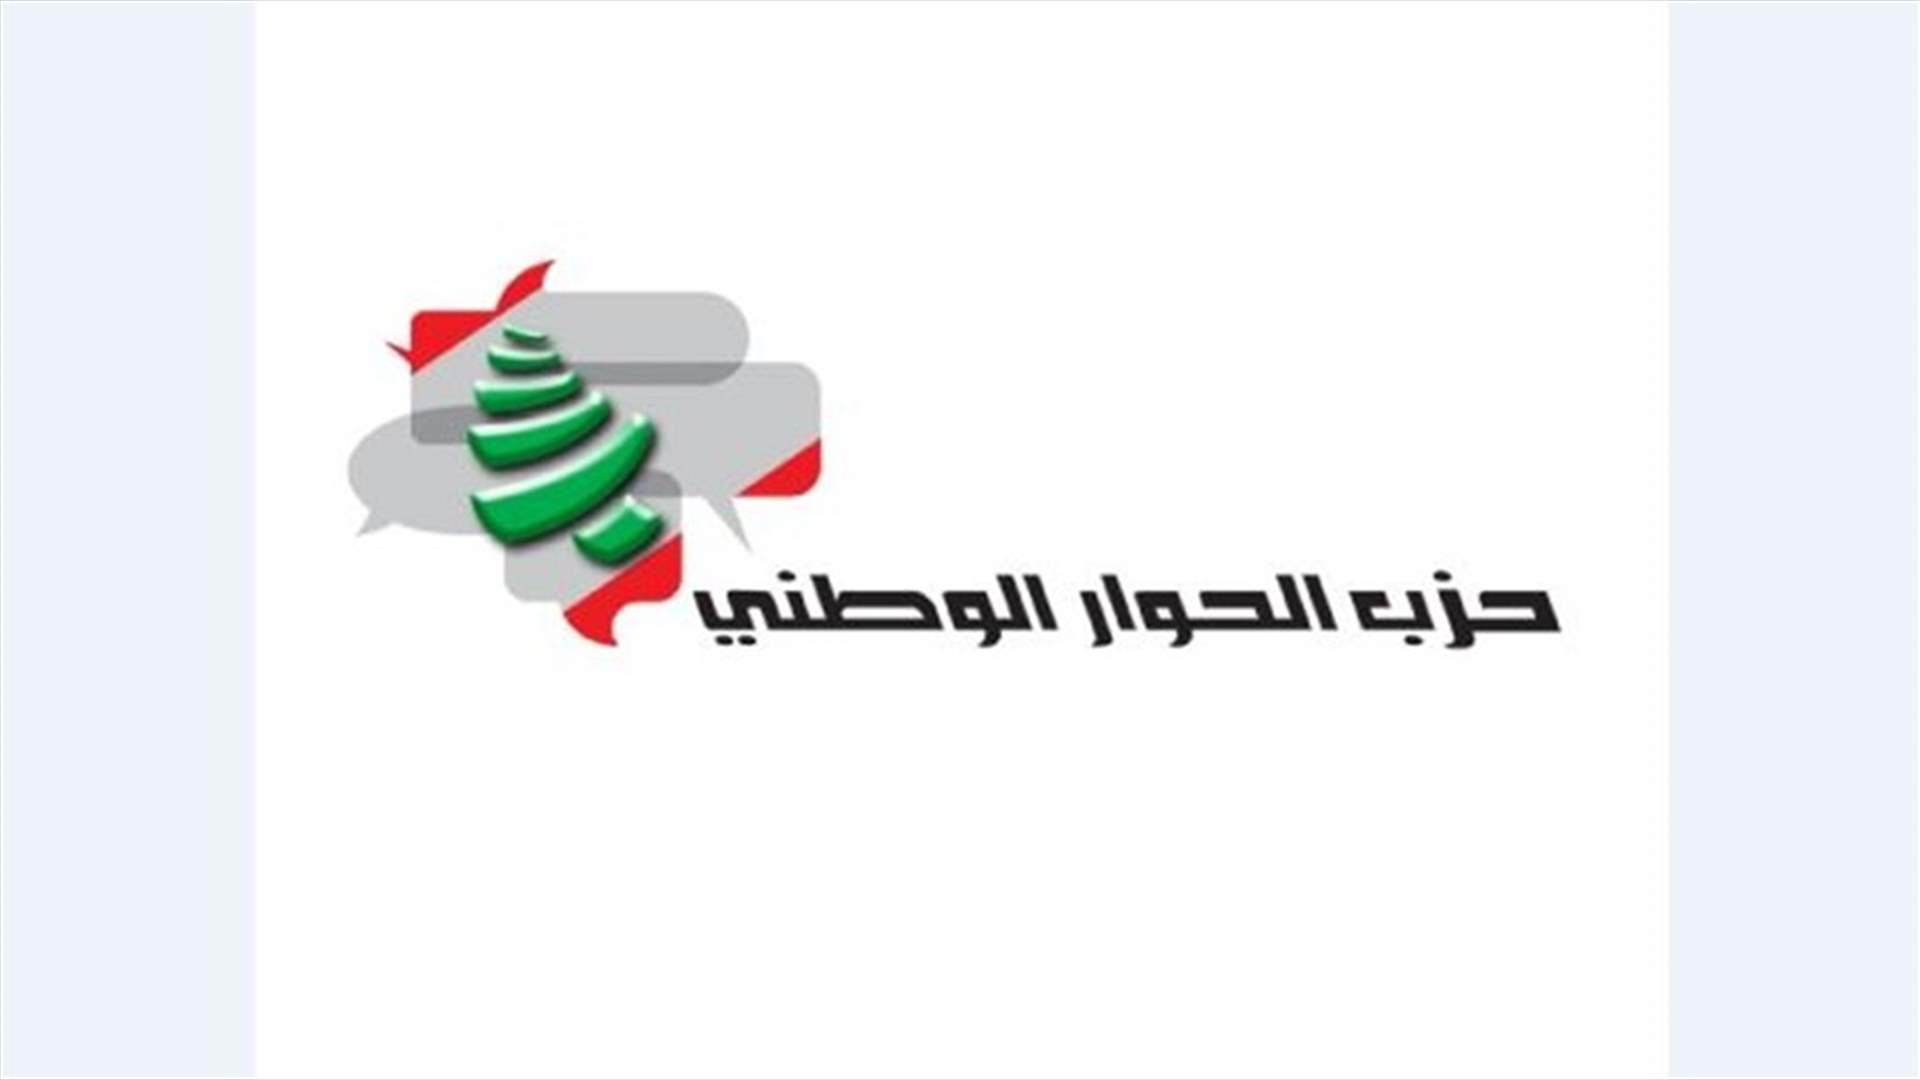 حزب الحوار الوطني: طلبنا استقالة ممثلتنا في مجلس بلدية بيروت